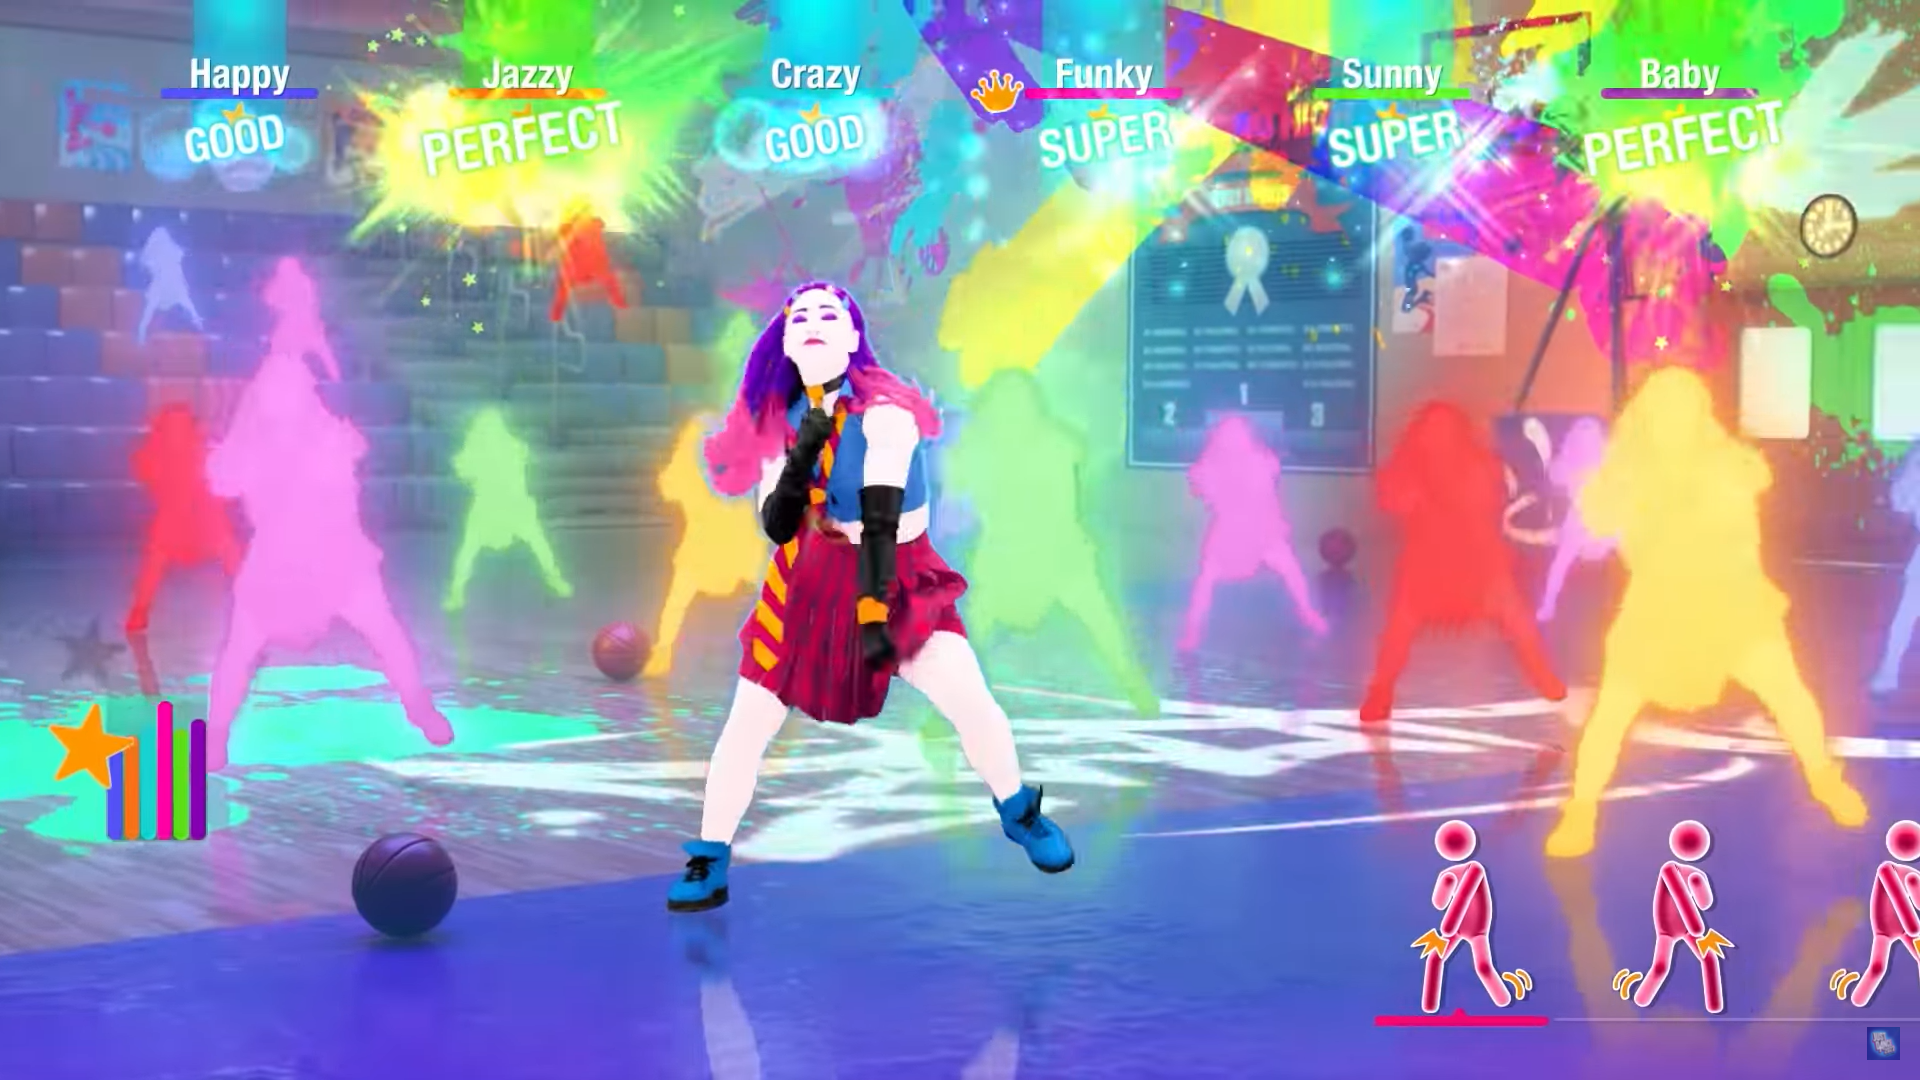 Just Dance 2023 & 2024 Edition – Novos modos de jogo são revelados; Mais  novidades